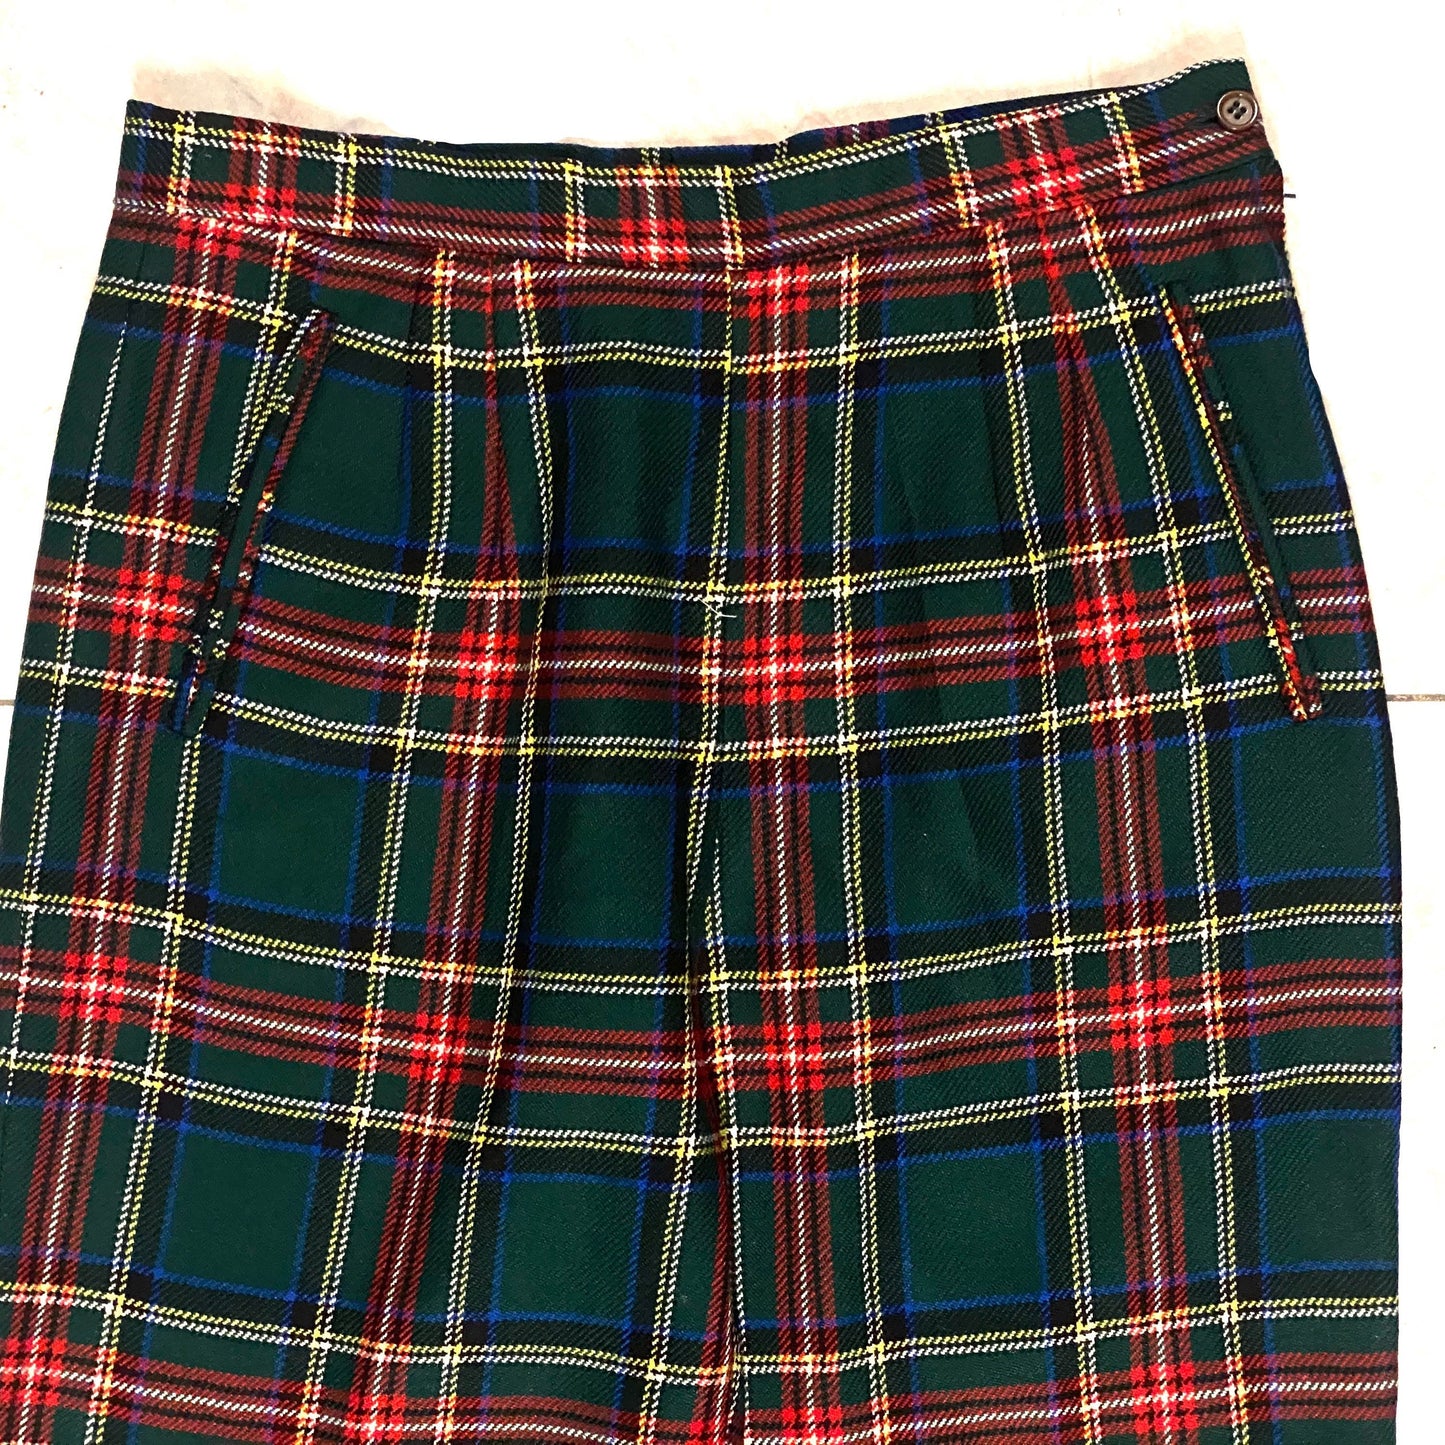 SM classic green/red tartan pure new wool ladies trousers size IT46  US 12/14 l, mint